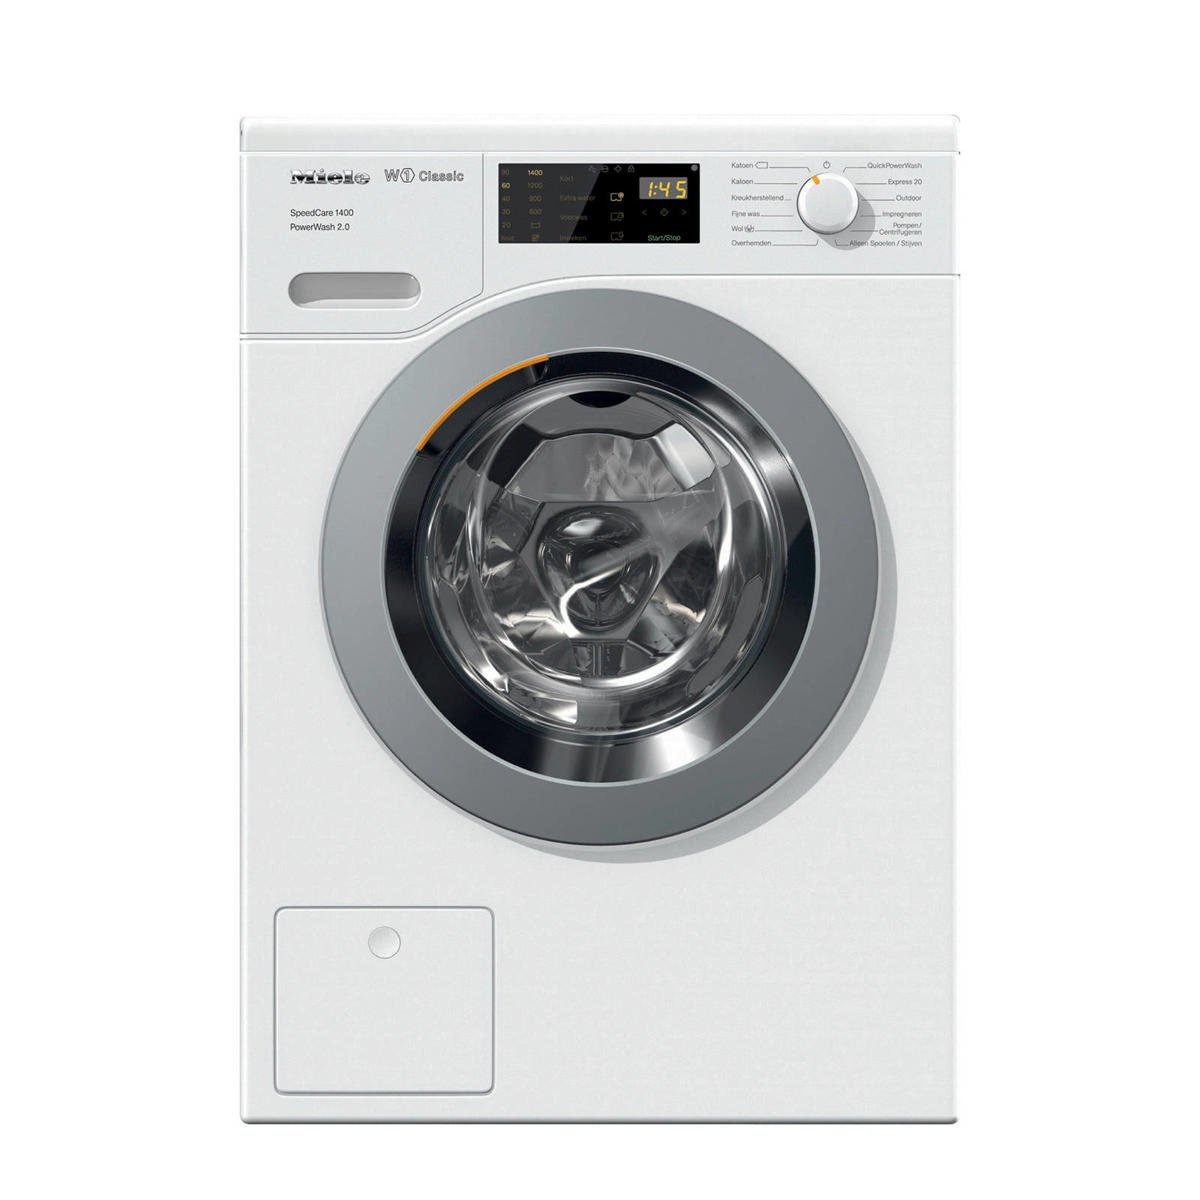 Eigenlijk oppervlakte aantrekkelijk Miele WDD320 SpeedCare 1400 Powerwash 2.0 wasmachine | wehkamp